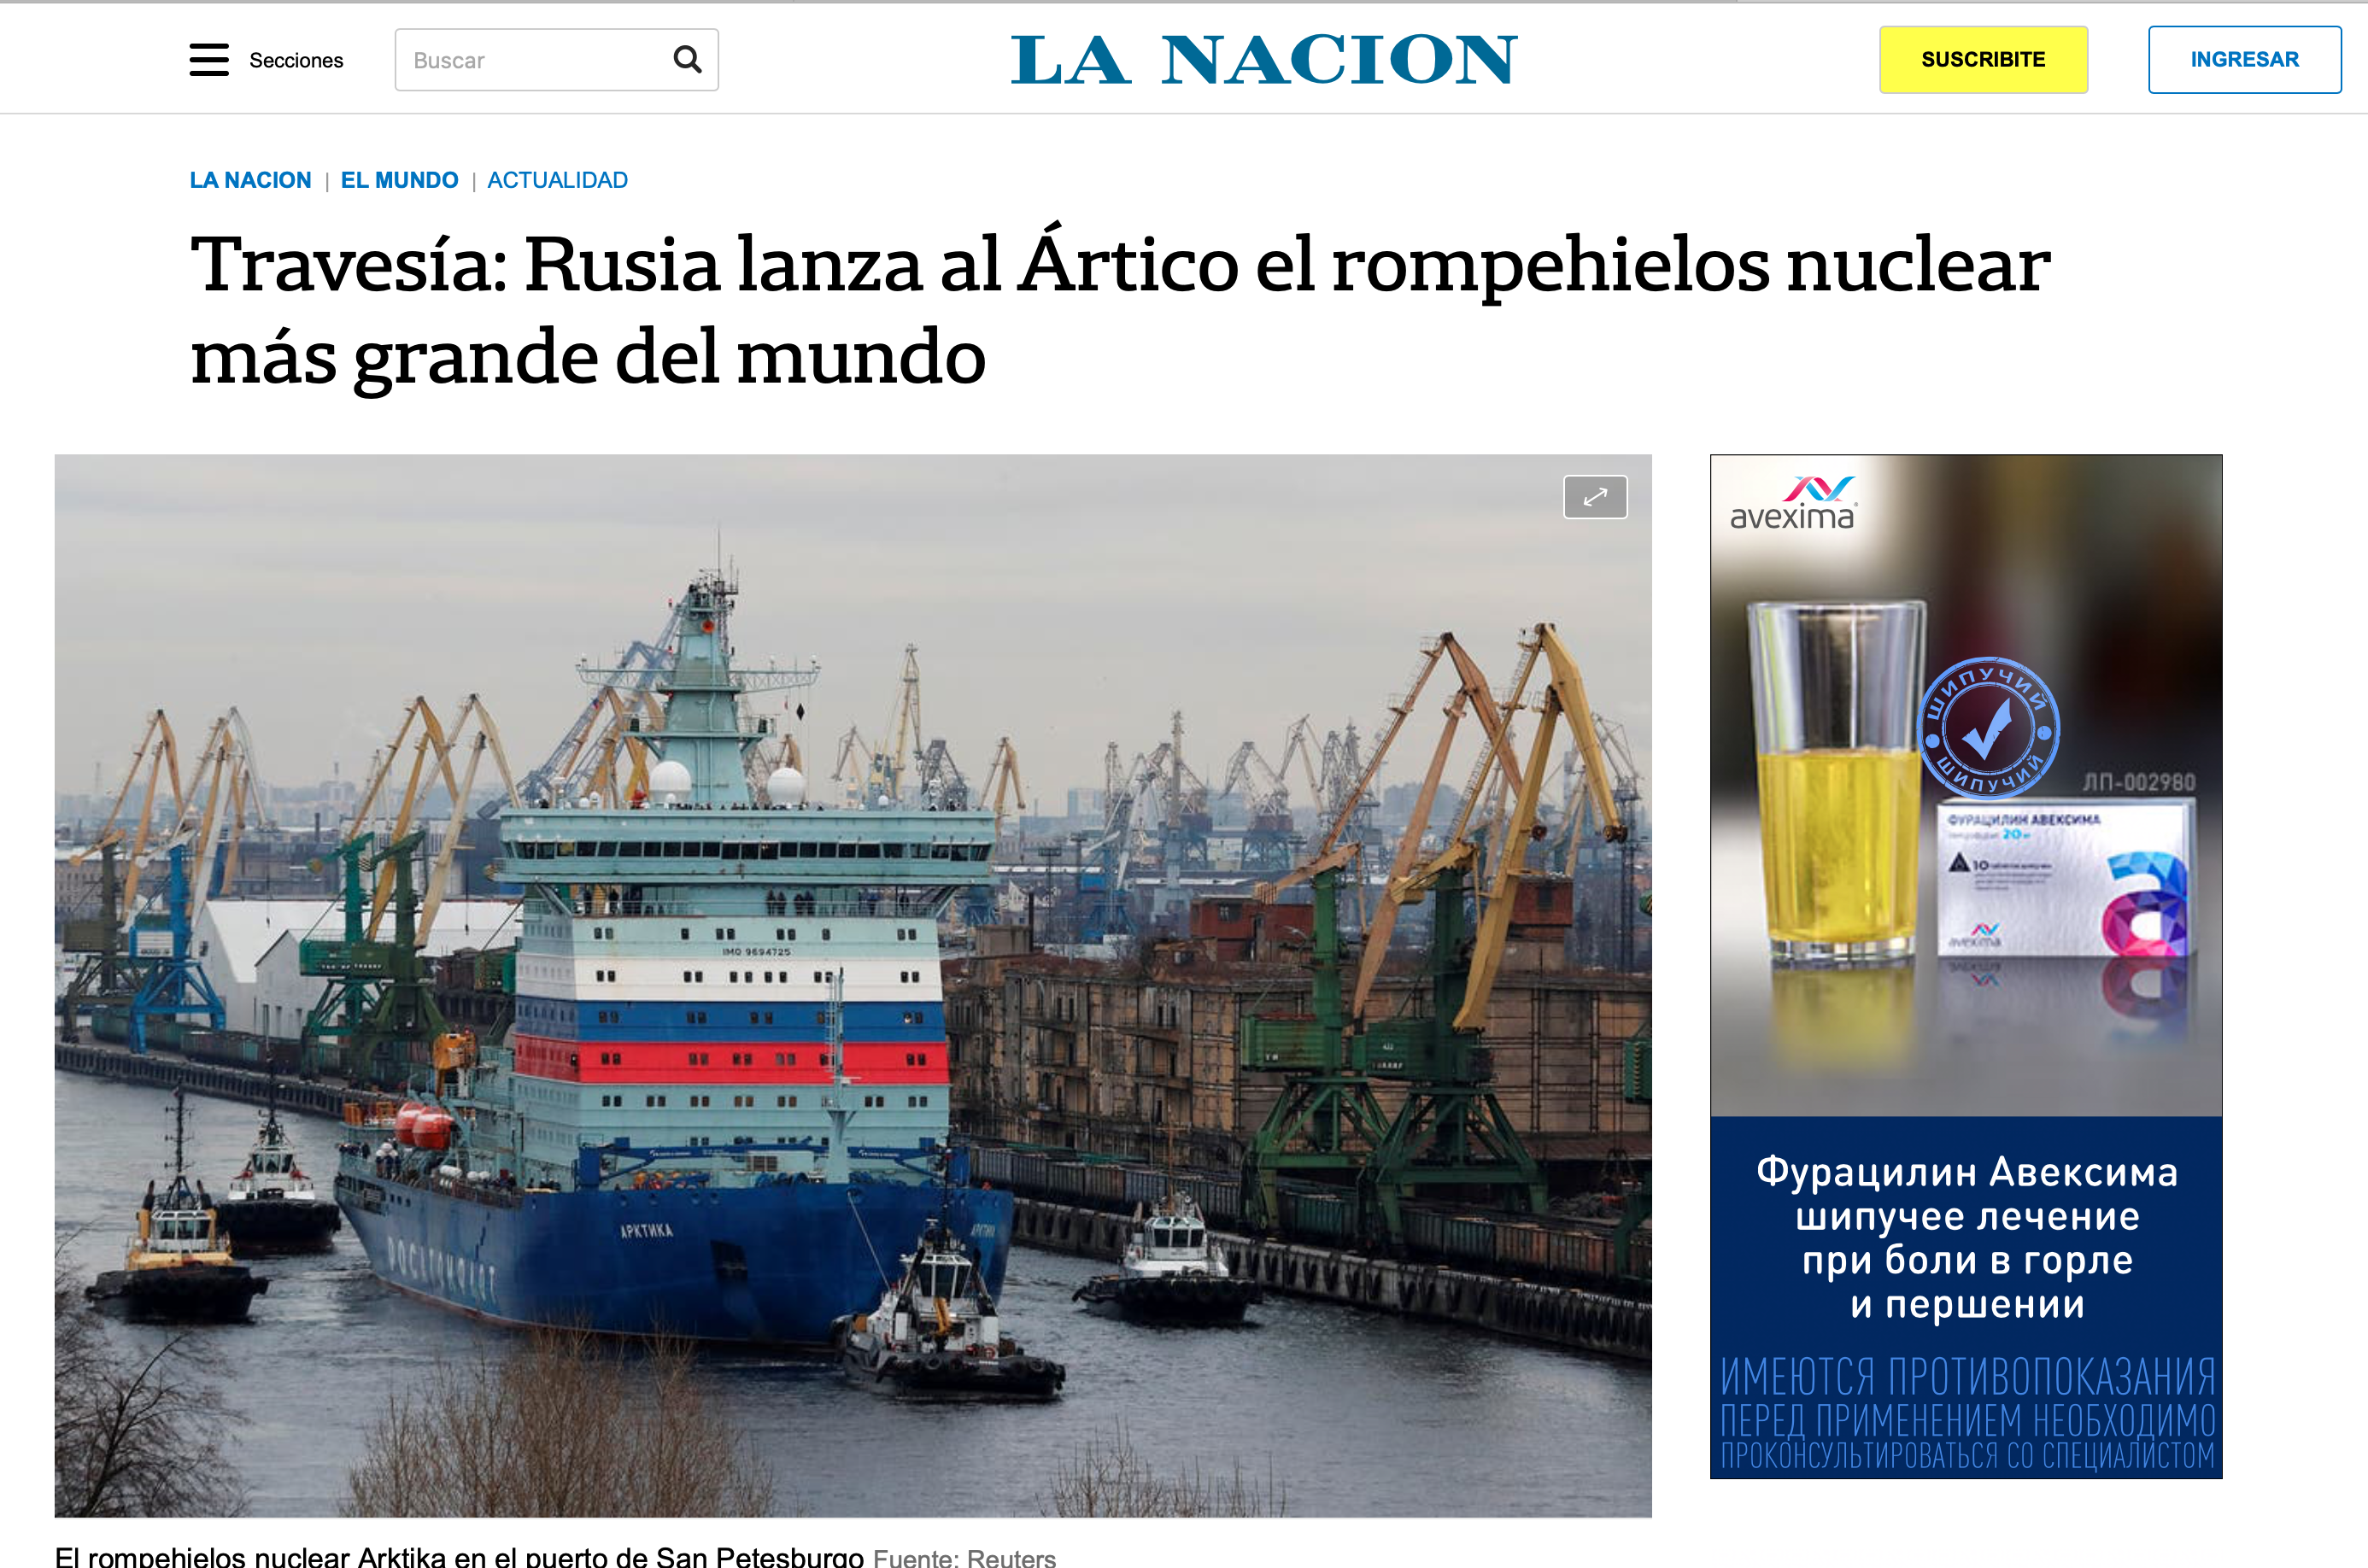 Travesía: Rusia lanza al Ártico el rompehielos nuclear más grande del mundo (La Nación)